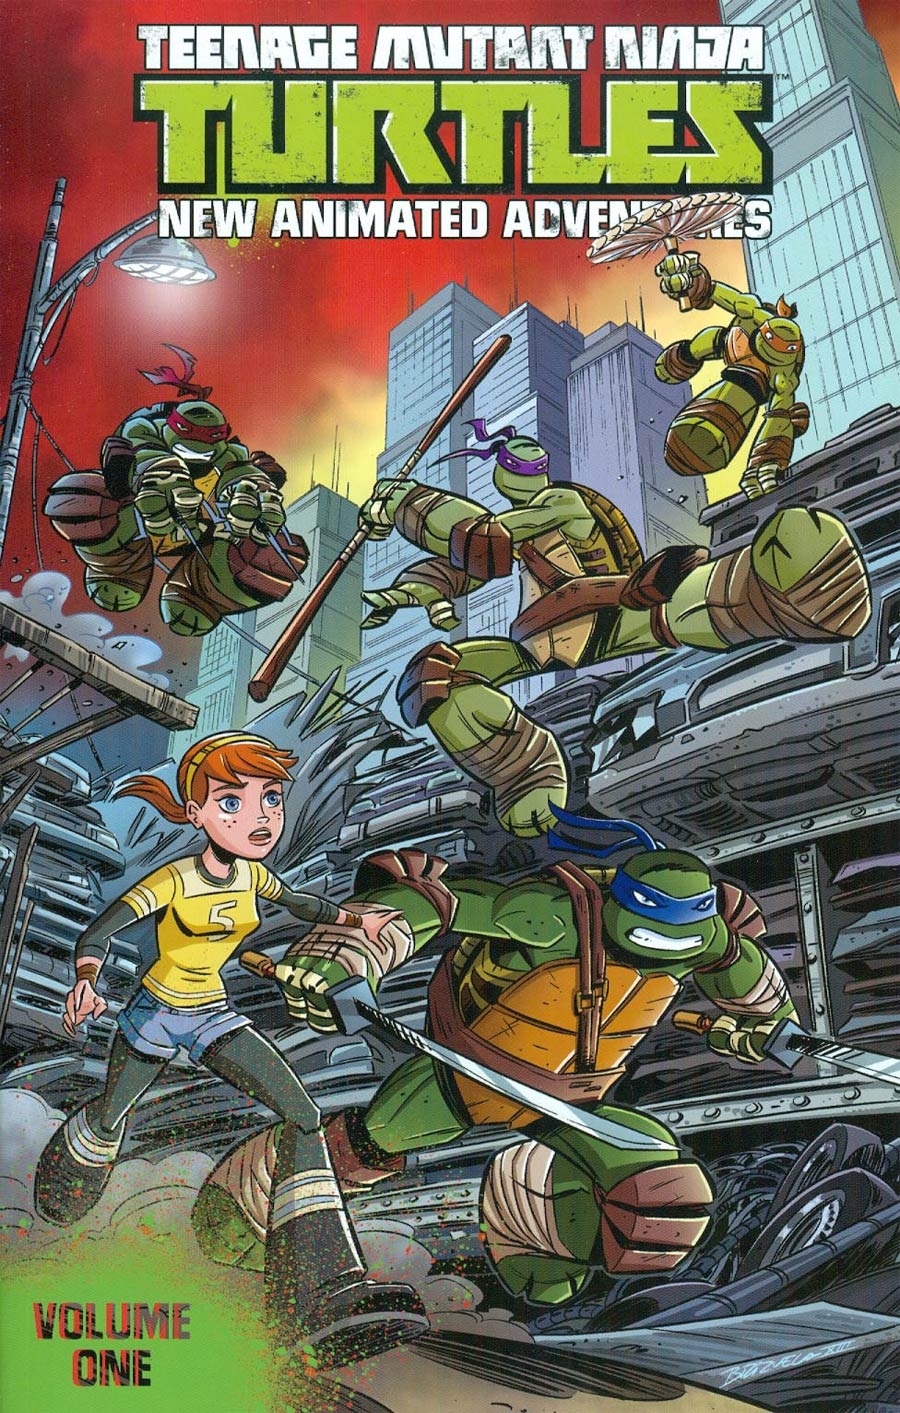 Teenage Mutant Ninja Turtles New Animated Adventures Vol 1 TP